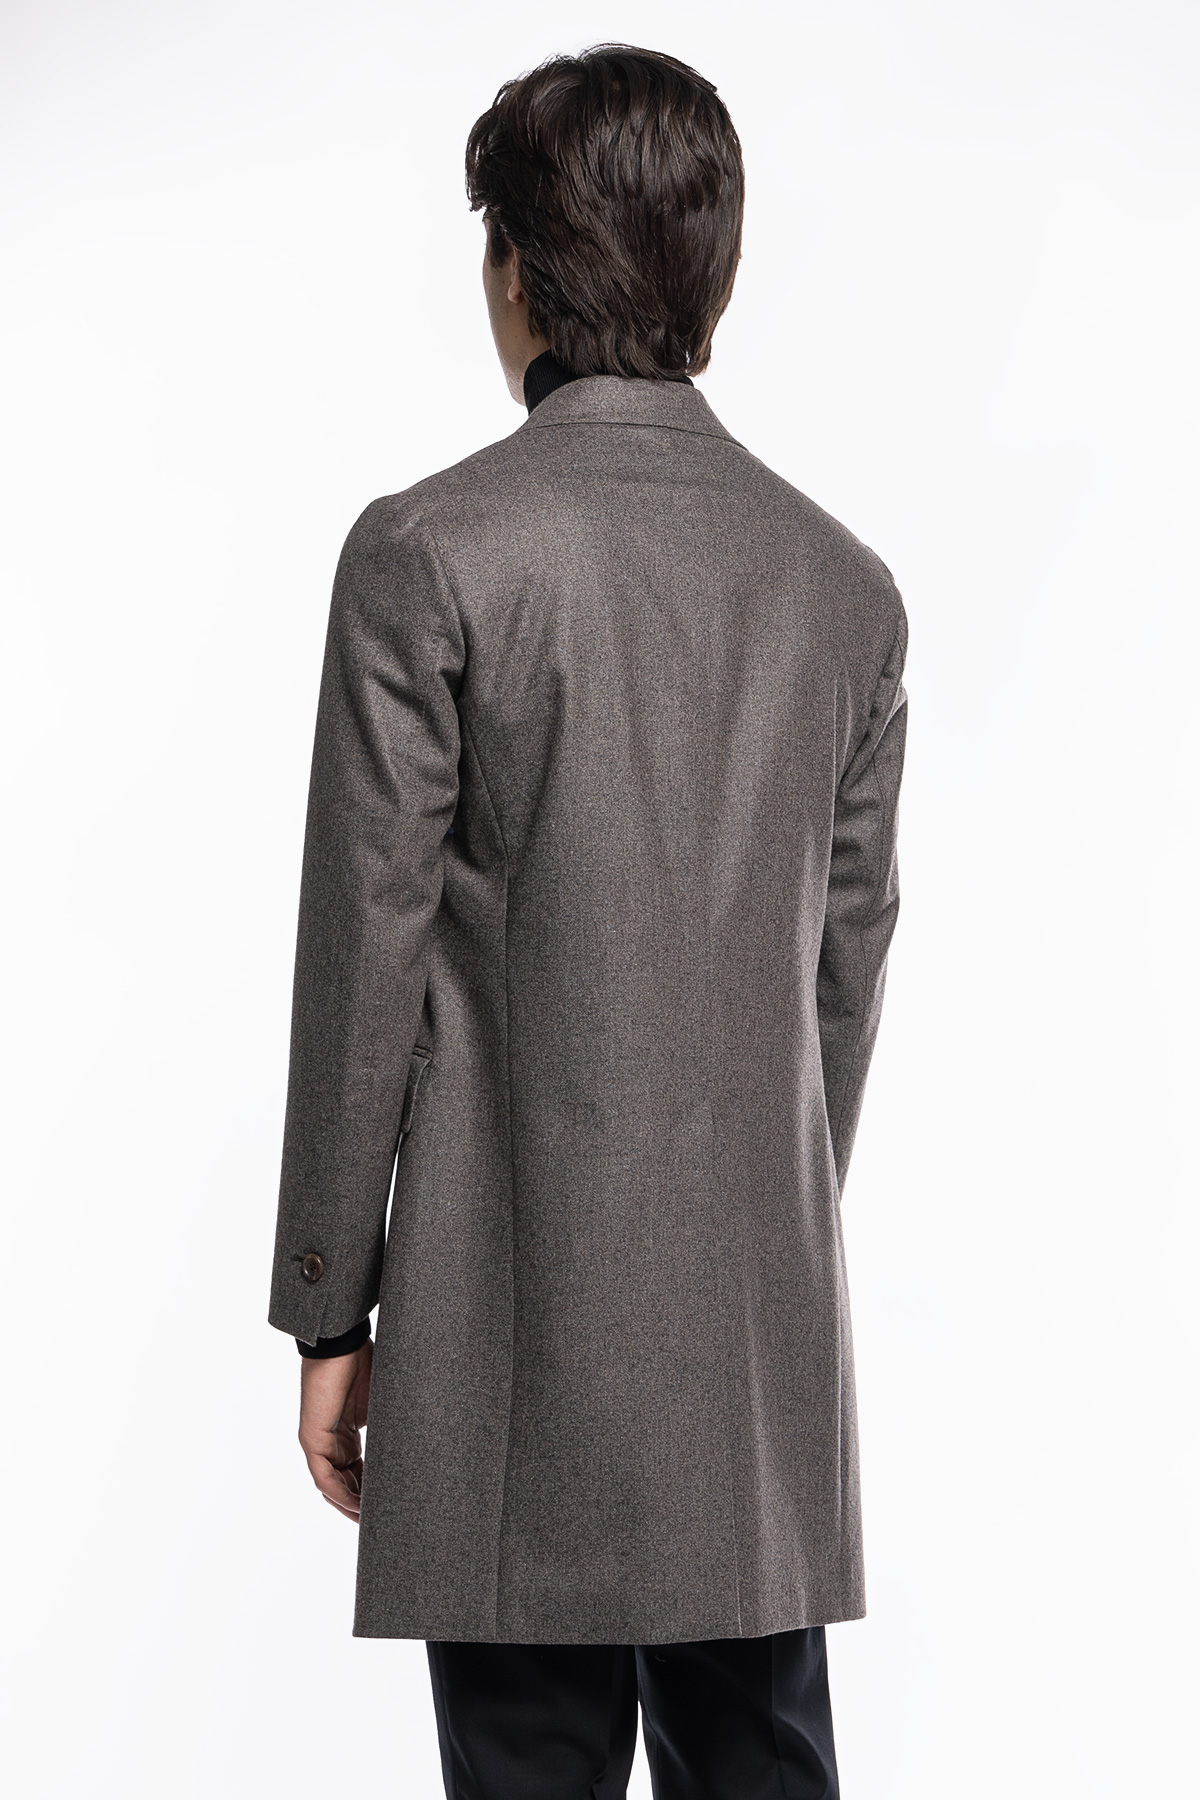 Cappotto uomo grigio monopetto in lana Vitale Barberis Canonico rever largo